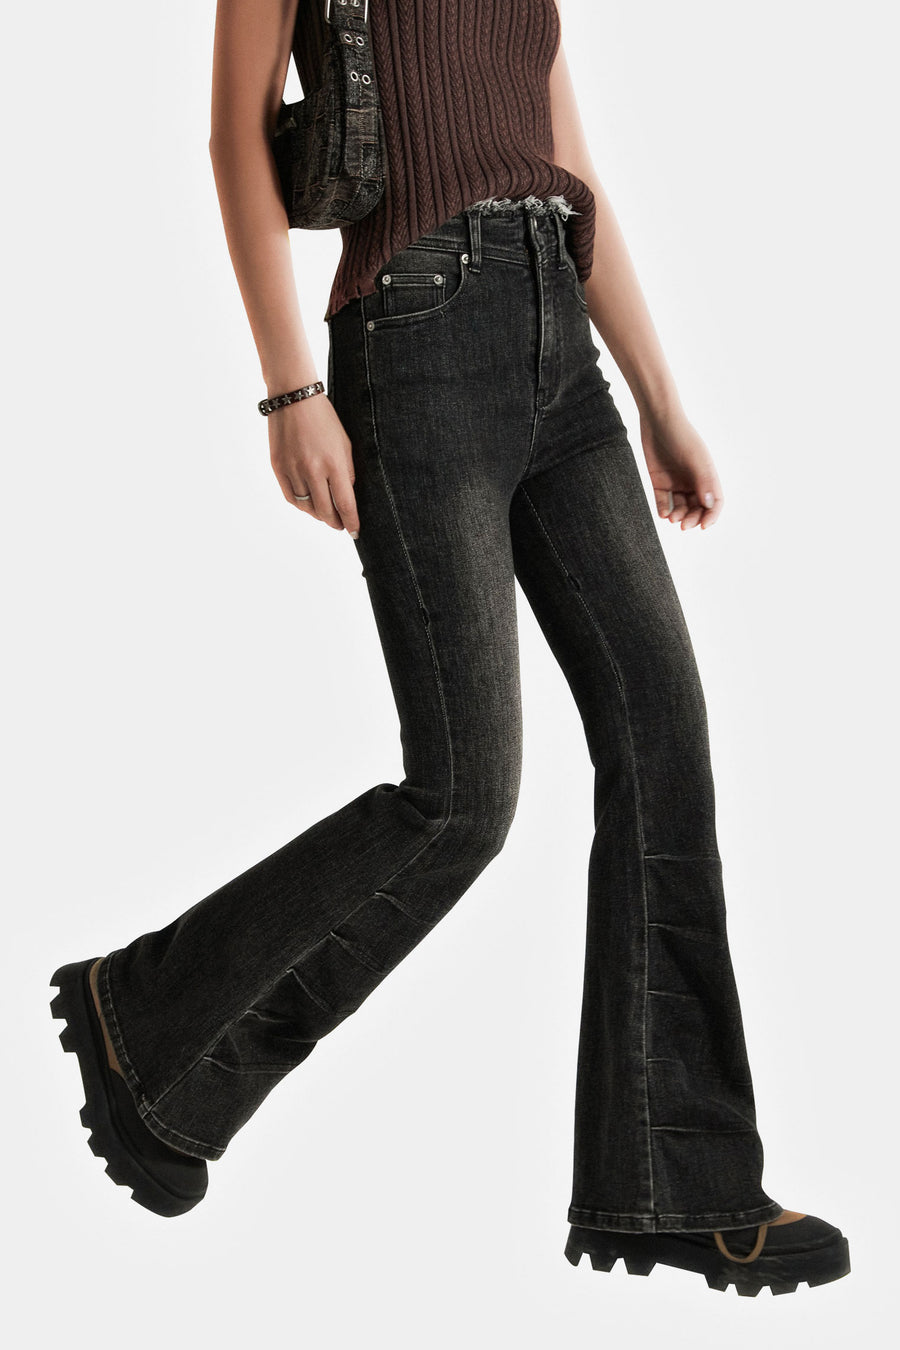 CHUU High Waist Semi Bootcut Jeans